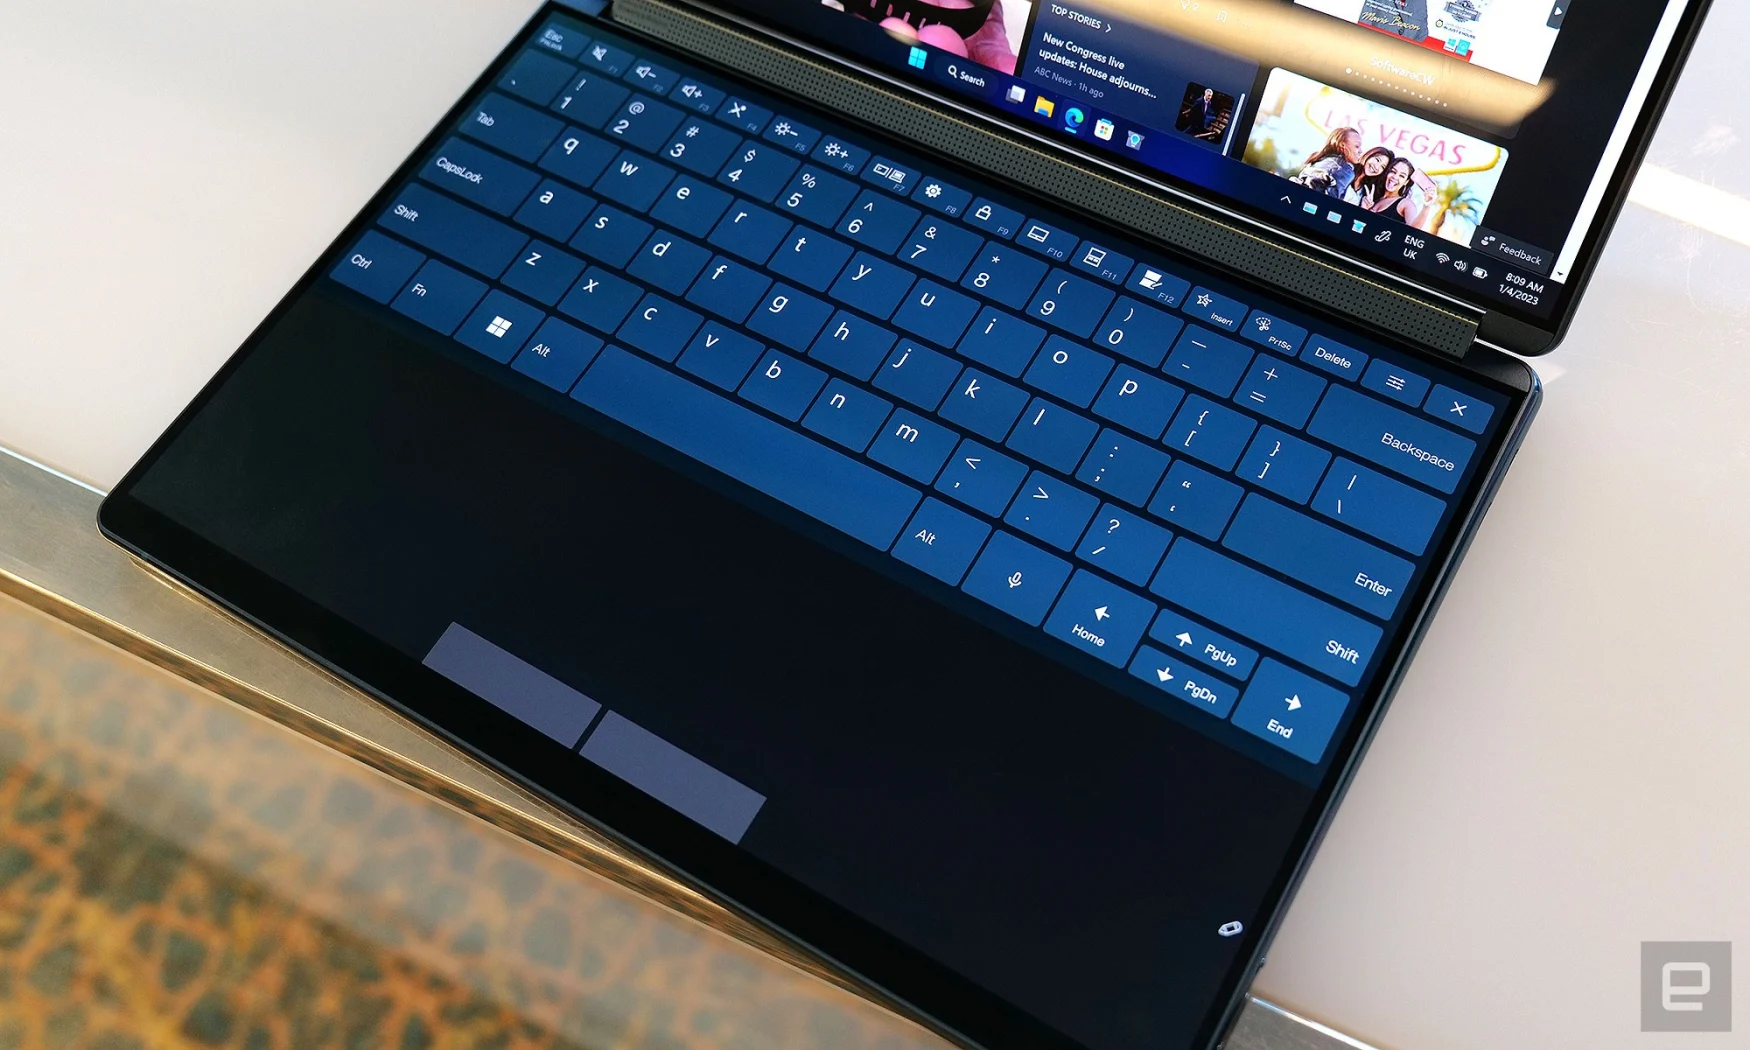 İdeal koşullarda, YogaBook 9i'nin klavyesi iyi çalışır. Ancak elleriniz sürüklenmeye başlar başlamaz, işler gerçekten hızlı bir şekilde karışabilir. 